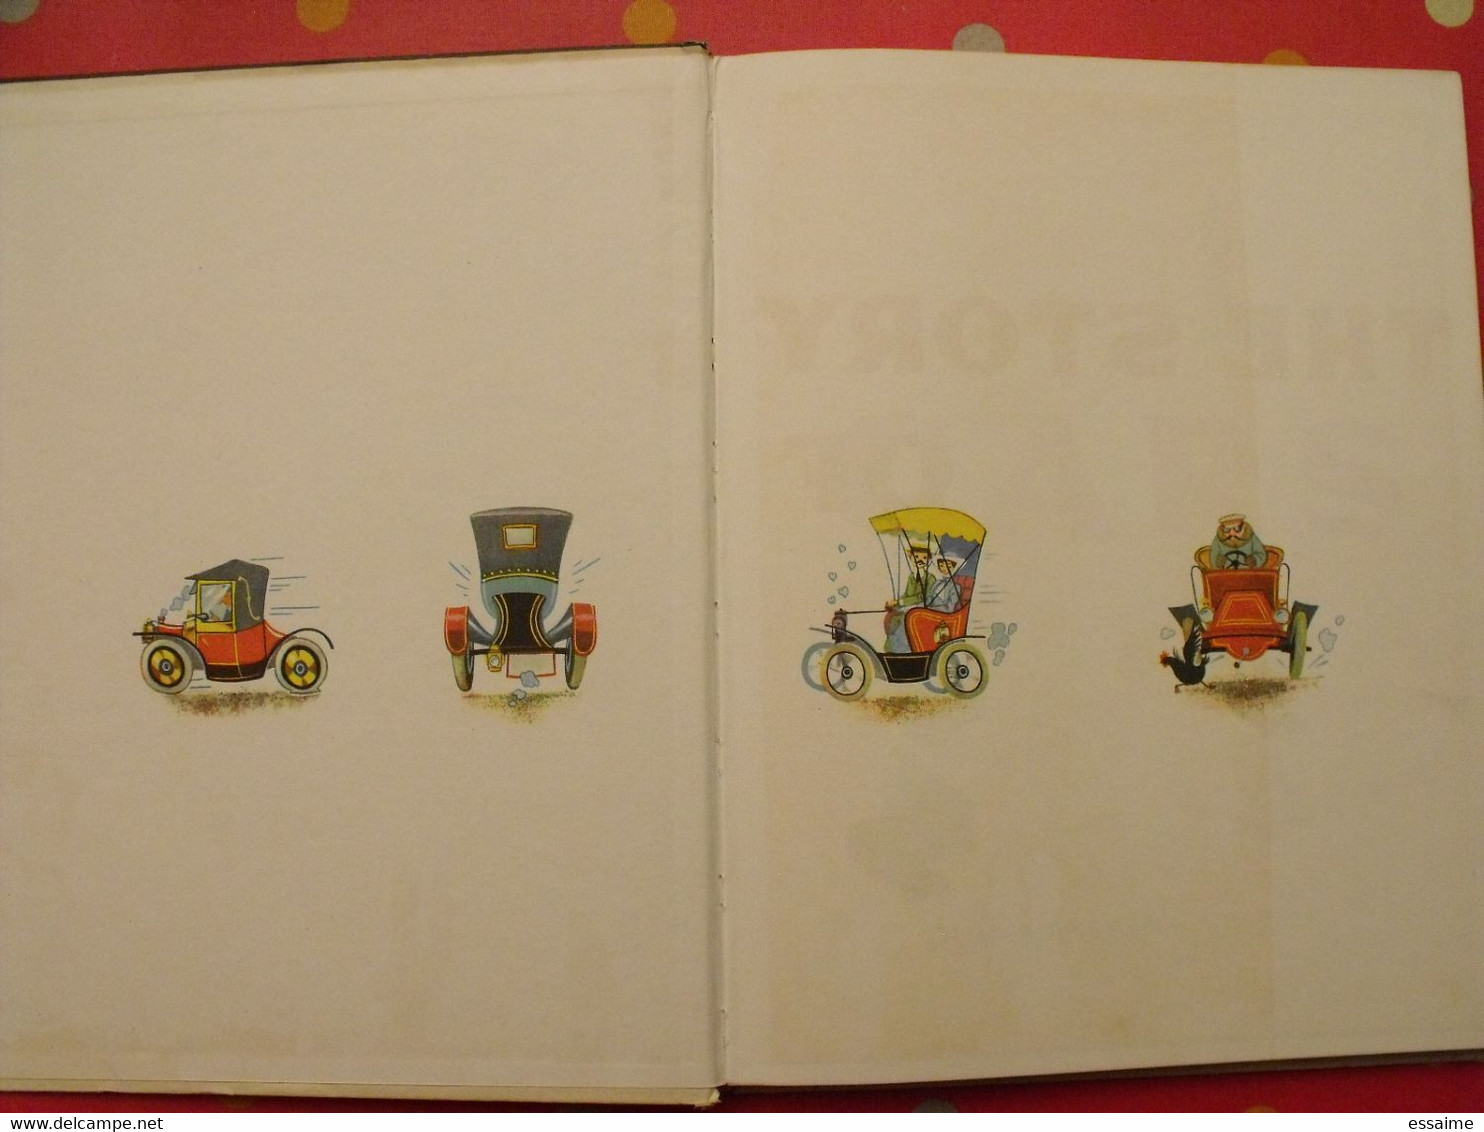 The Story Of Cars. Oldbourne Press 1961. Histoire De L'automobile. Bien Illustré - Transportation